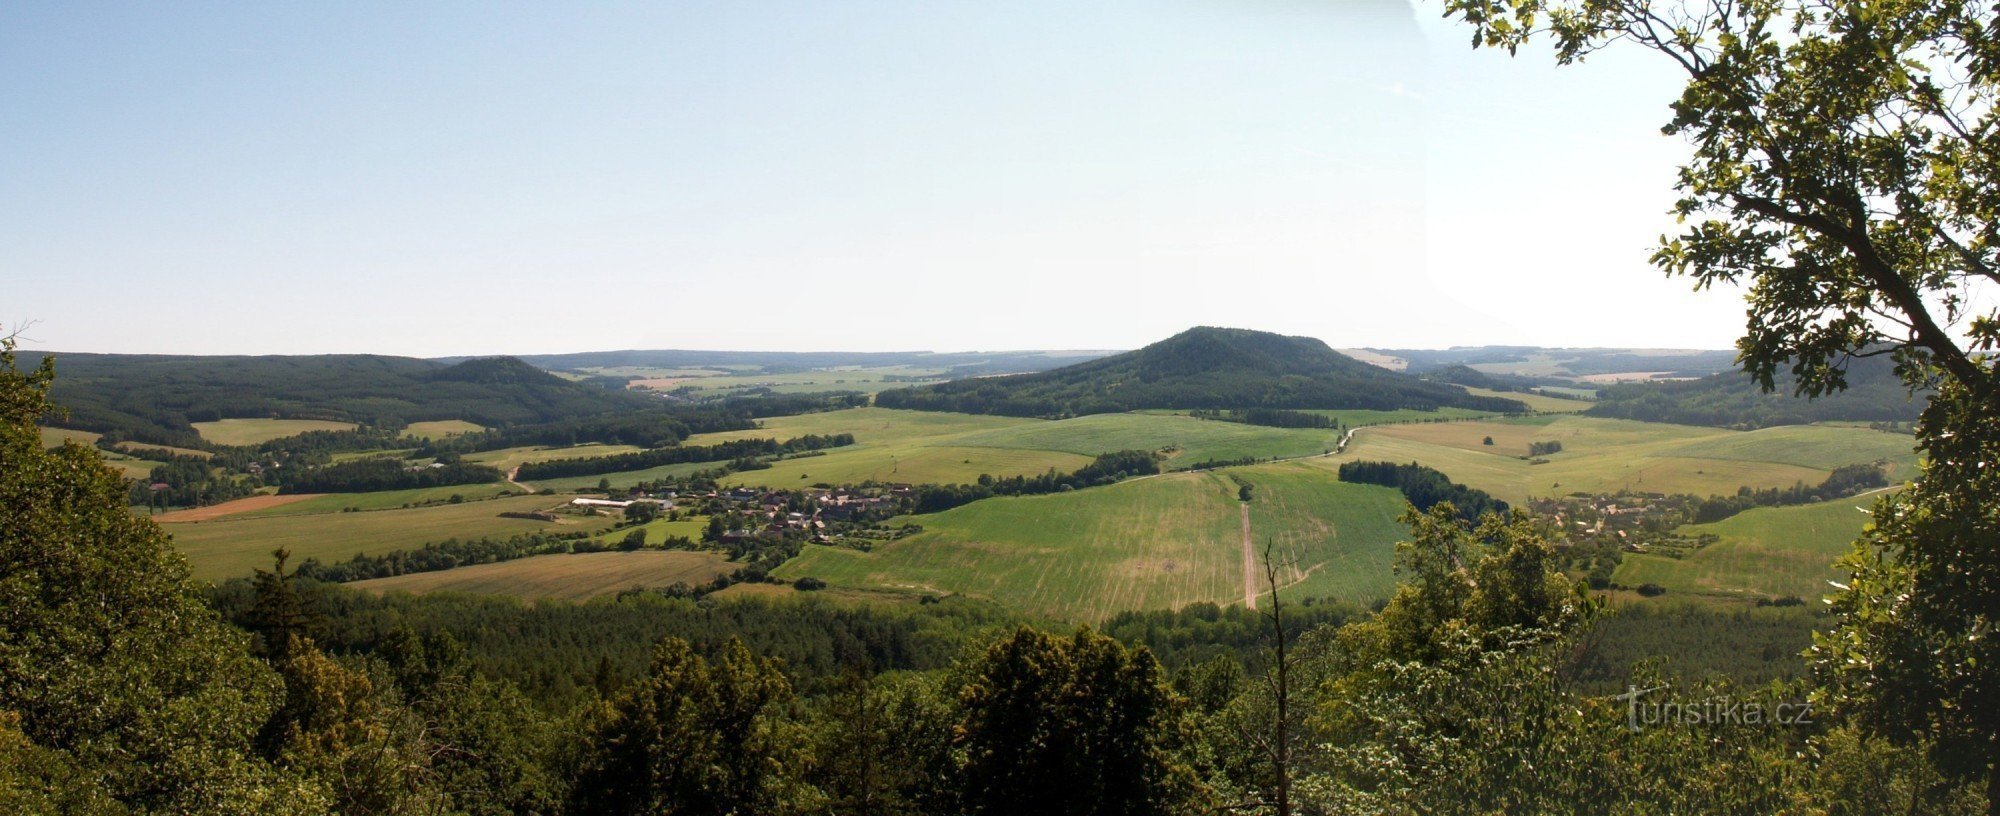 Aussicht vom Aussichtspunkt auf die Landschaft der Region Manětín